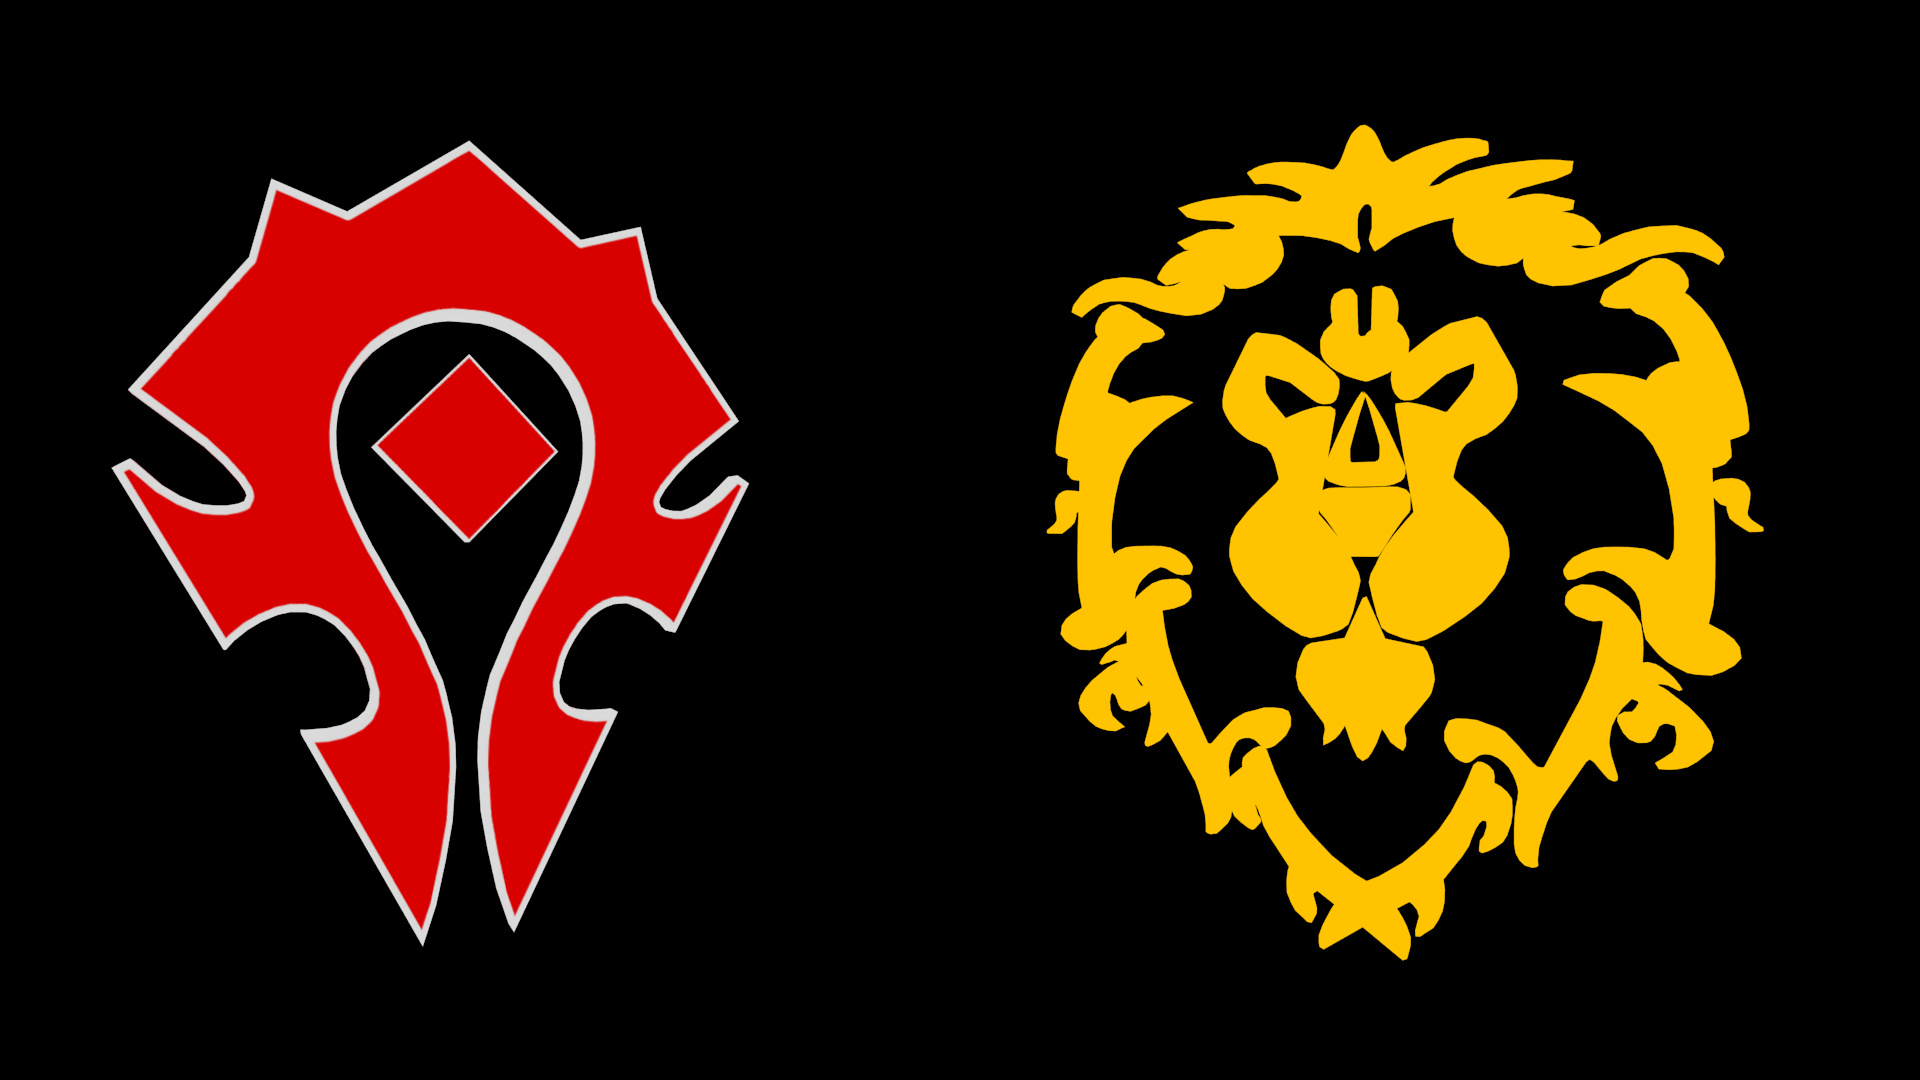 Horde Logo, Gaming symbol, World of Warcraft, Faction pride, 1920x1080 Full HD Desktop